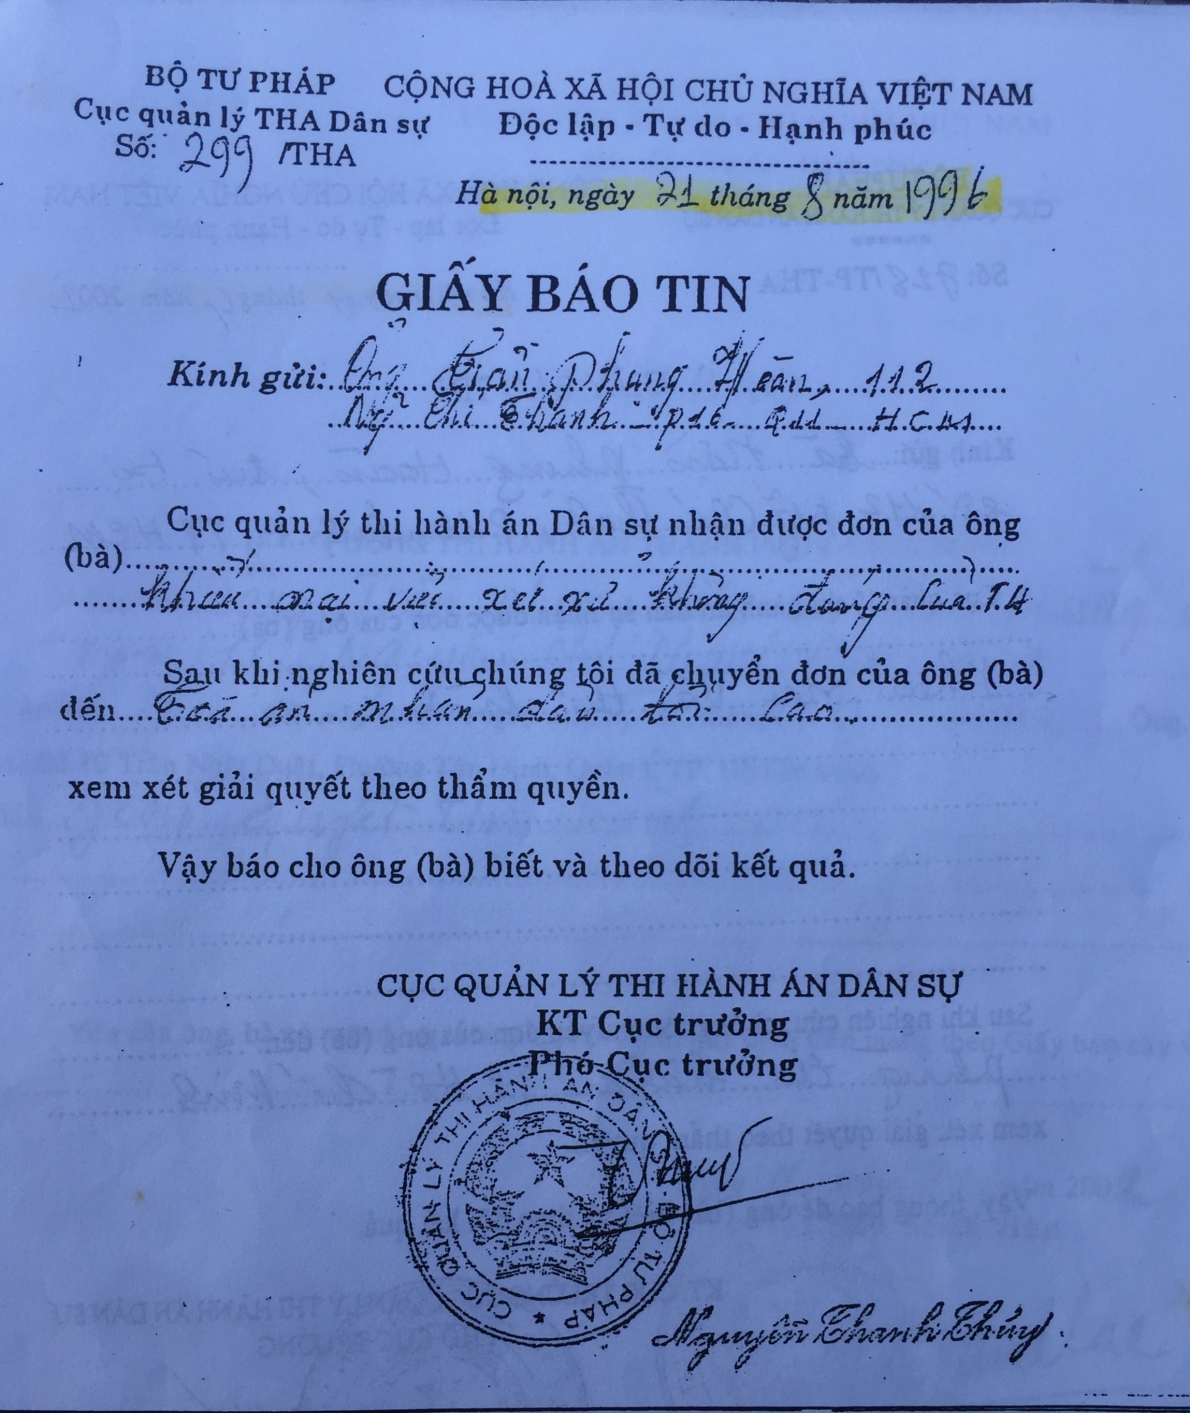 Bản án 26 năm chưa được thi hành tại TP. Hồ Chí Minh: Cần nhìn thẳng vào sự thật để sửa sai